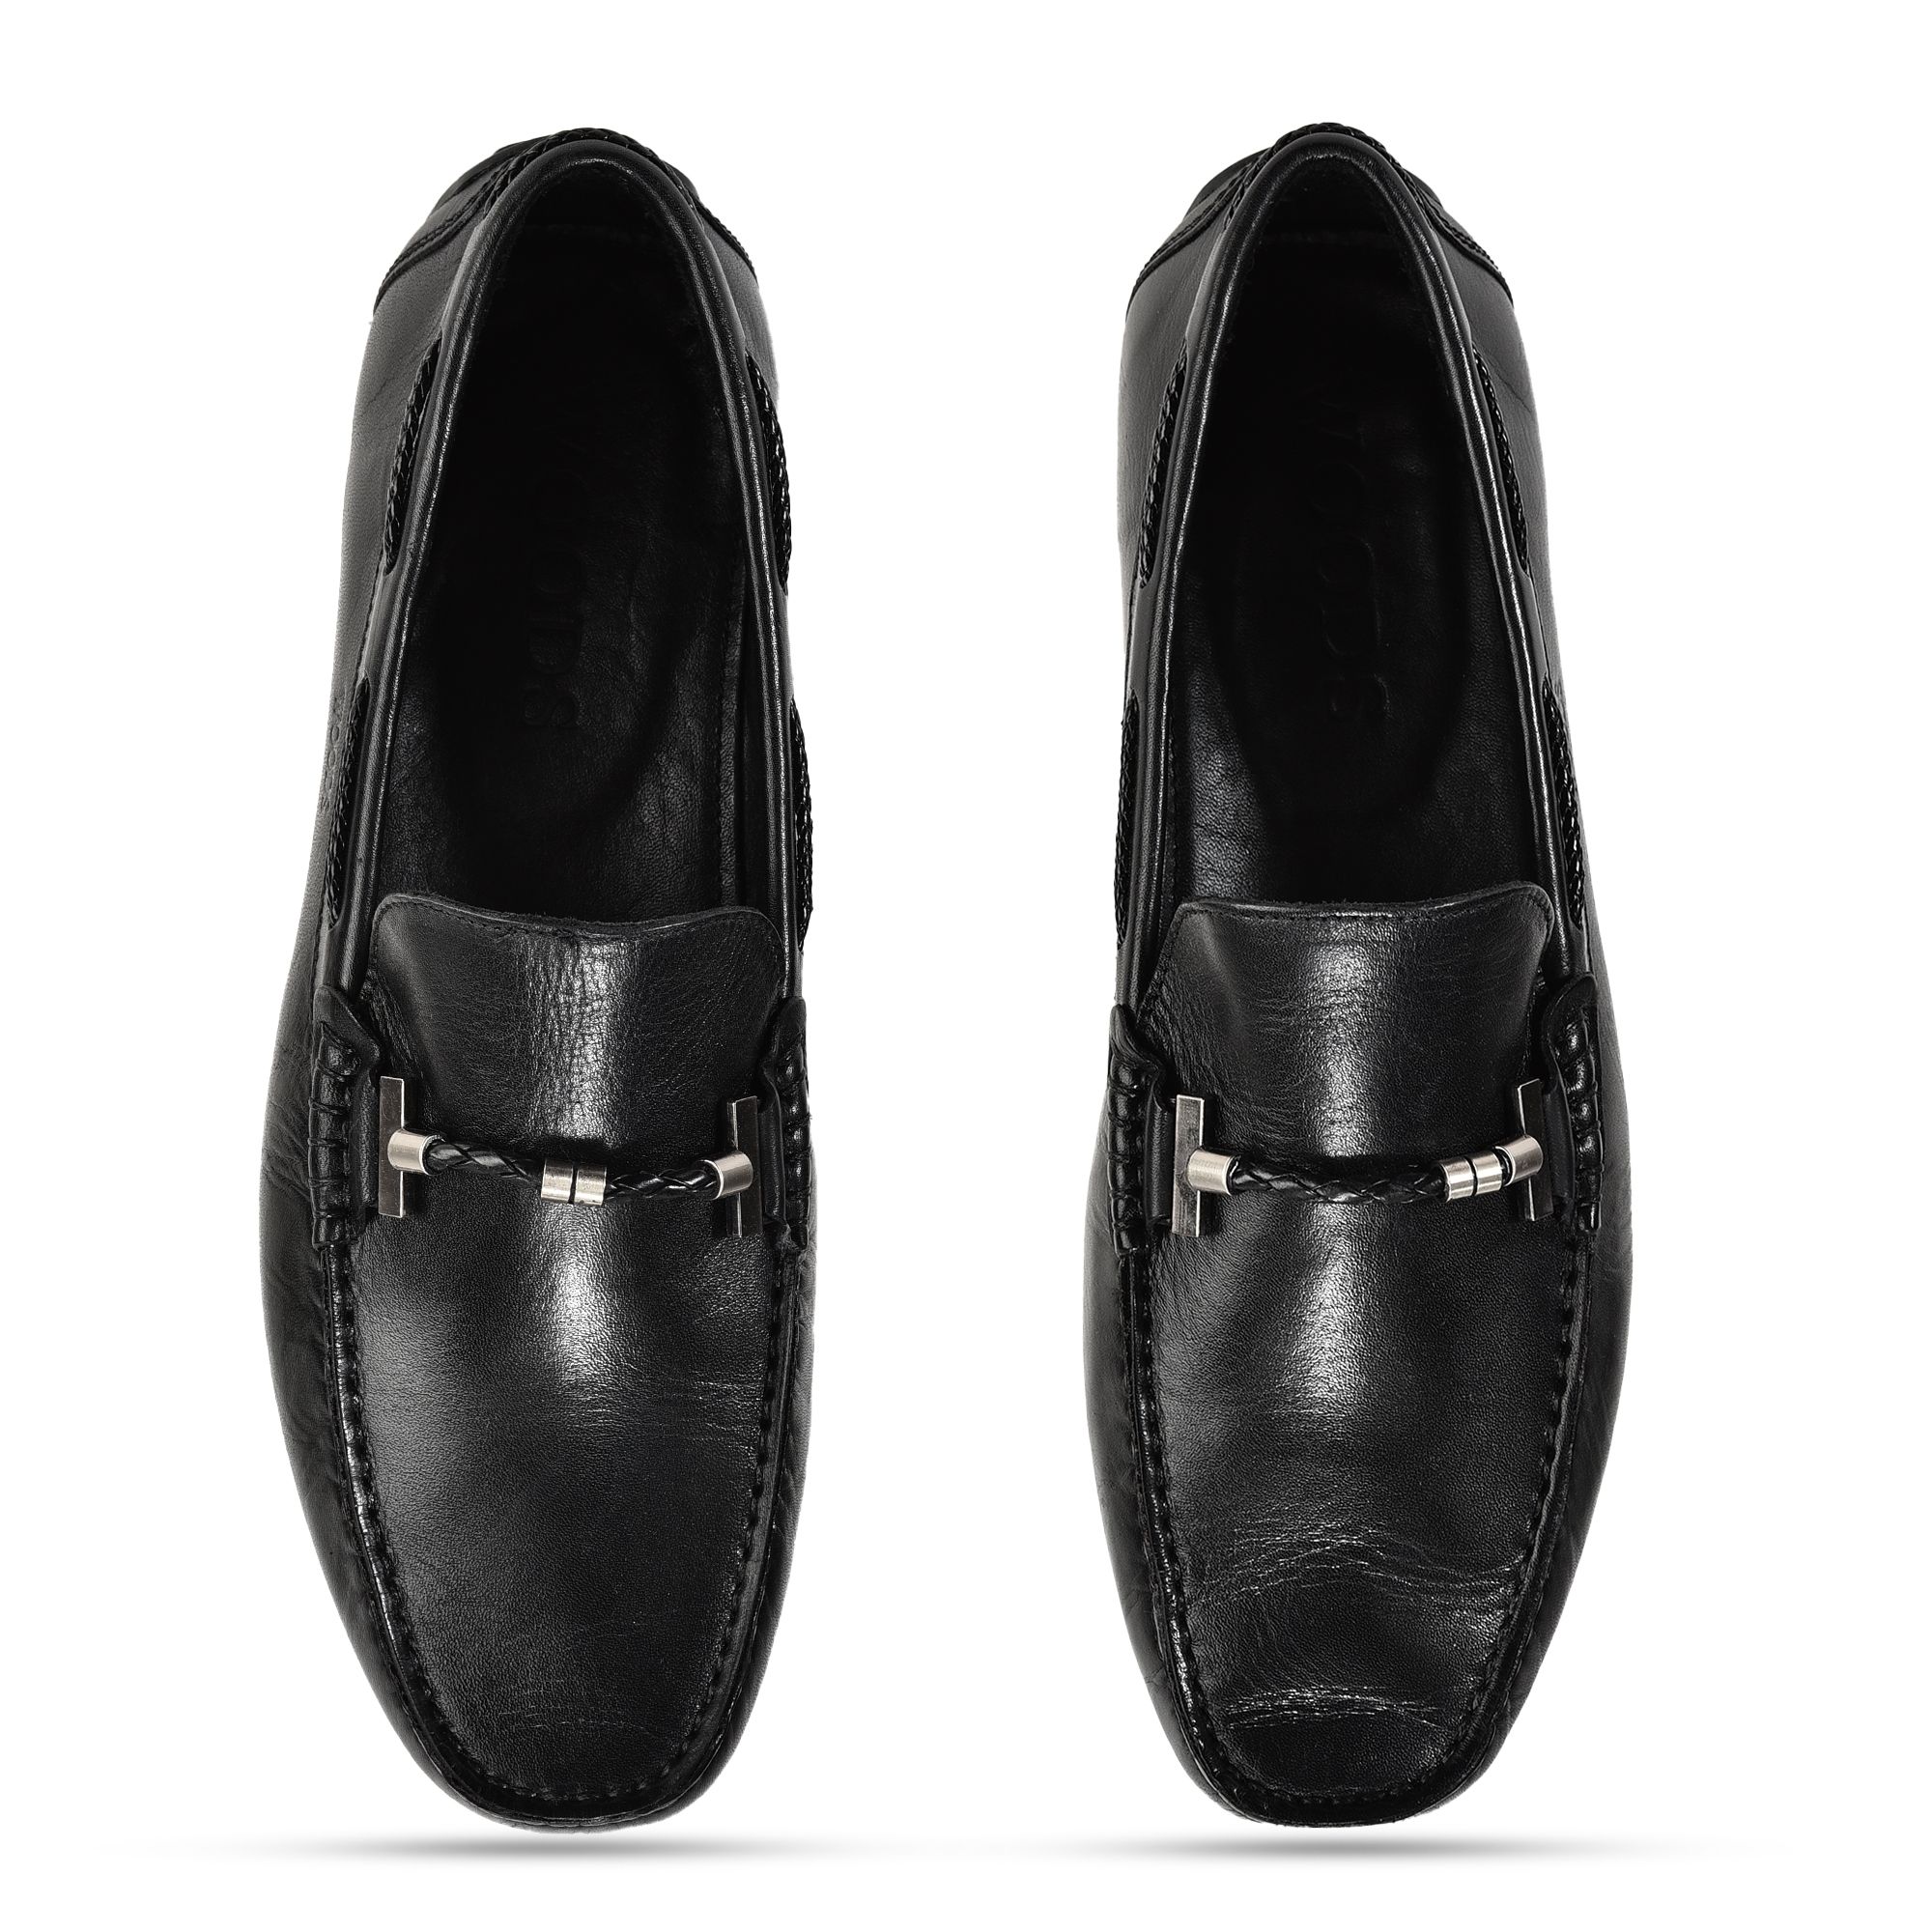 Black loafers for men